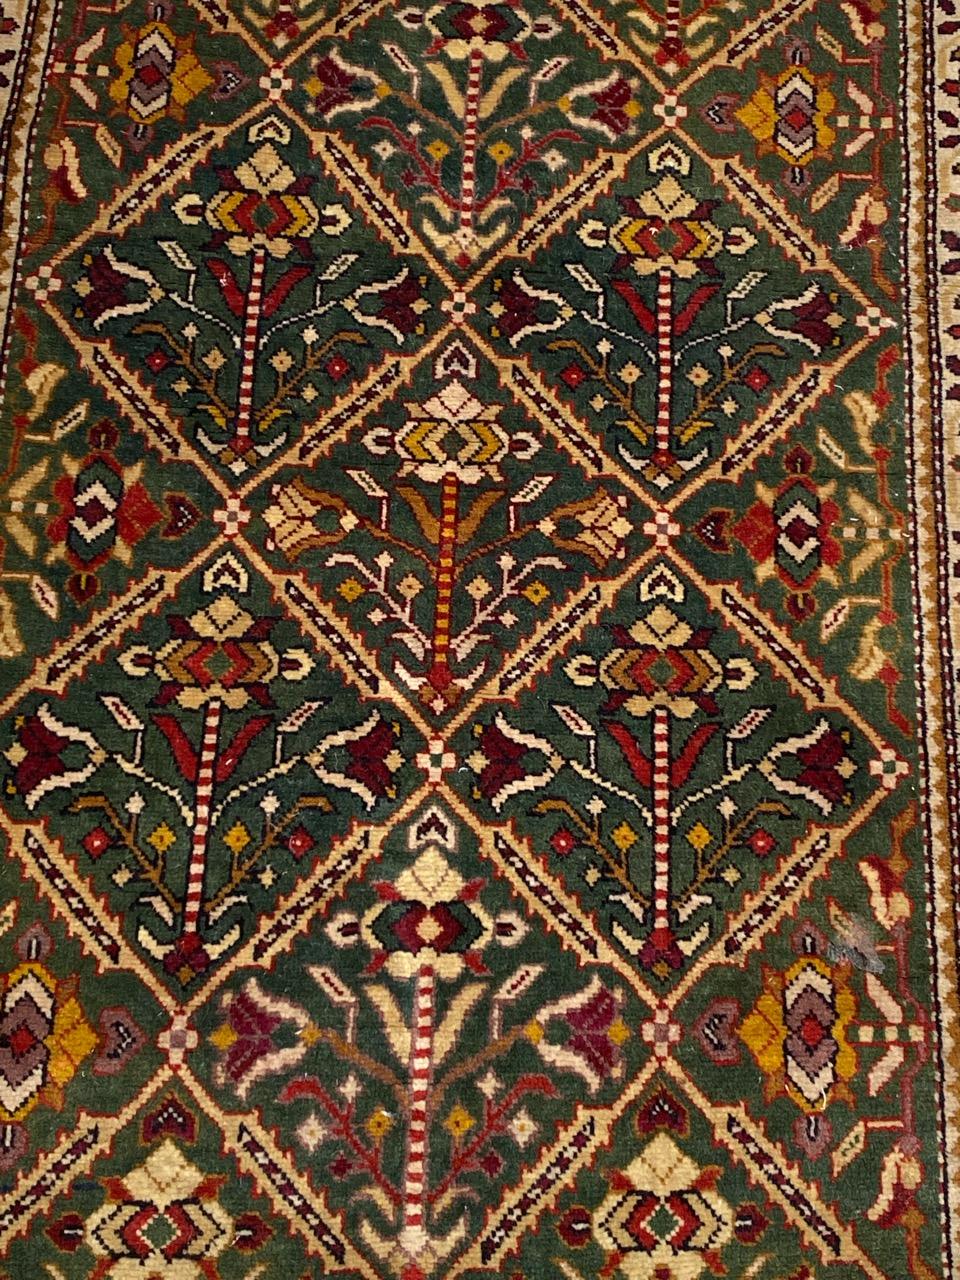 Schöner kaukasischer Teppich aus der Mitte des Jahrhunderts mit schönem geometrischem Muster und schönen Farben, vollständig und fein handgeknüpft mit Wollsamt auf Baumwollbasis.

✨✨✨
